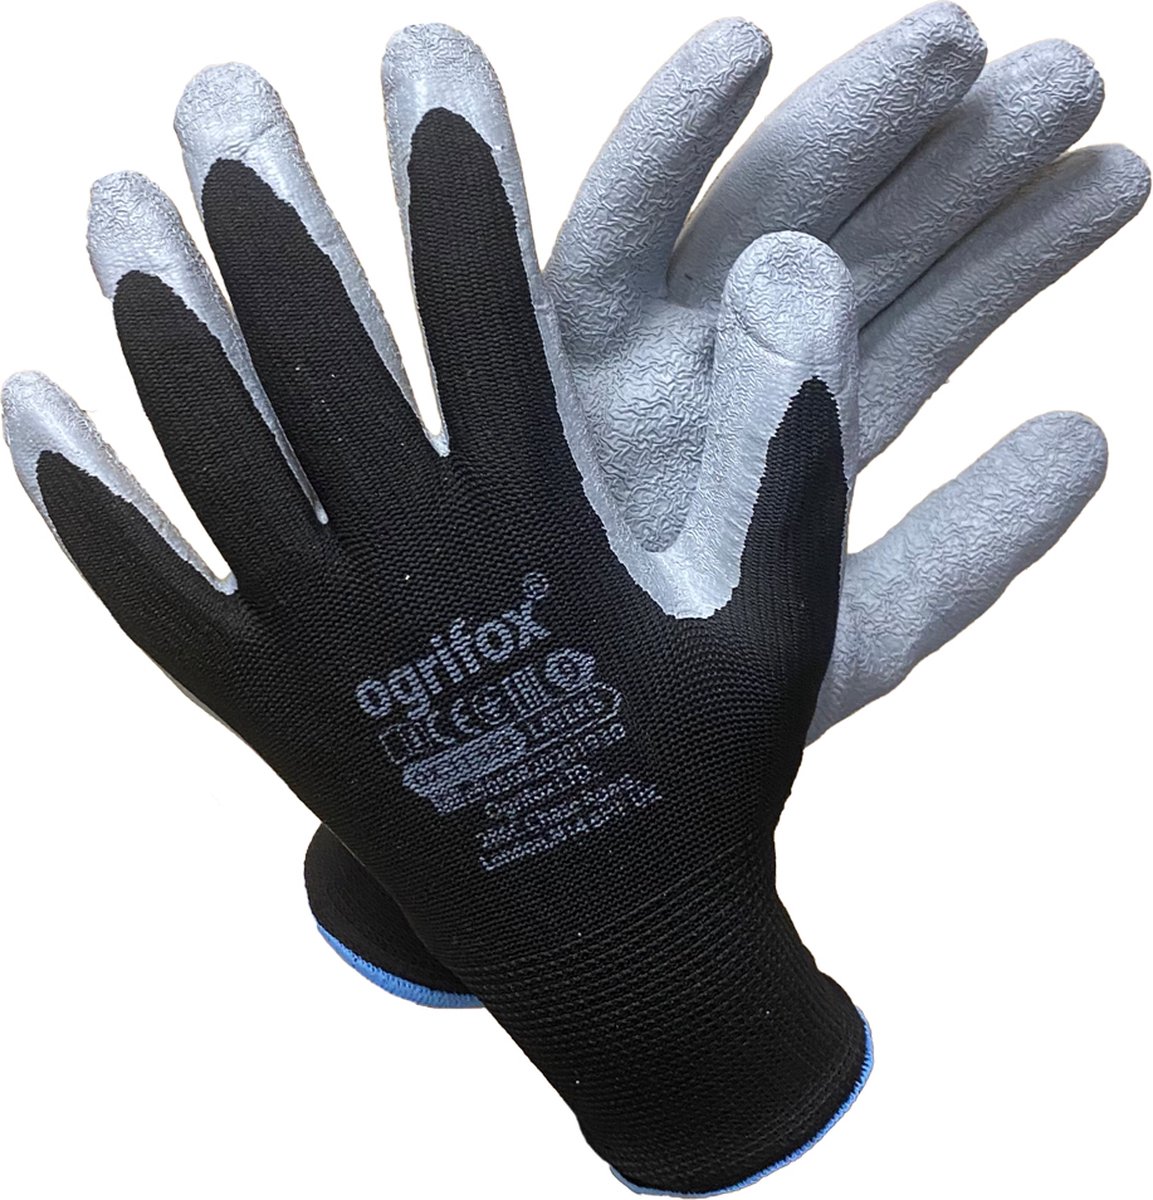 48 paar OGRIFOX Latex Gecoate - Werkhandschoenen - Veiligheidshandschoenen - Beschermende Handschoenen - Doe het zelf - Maat 9